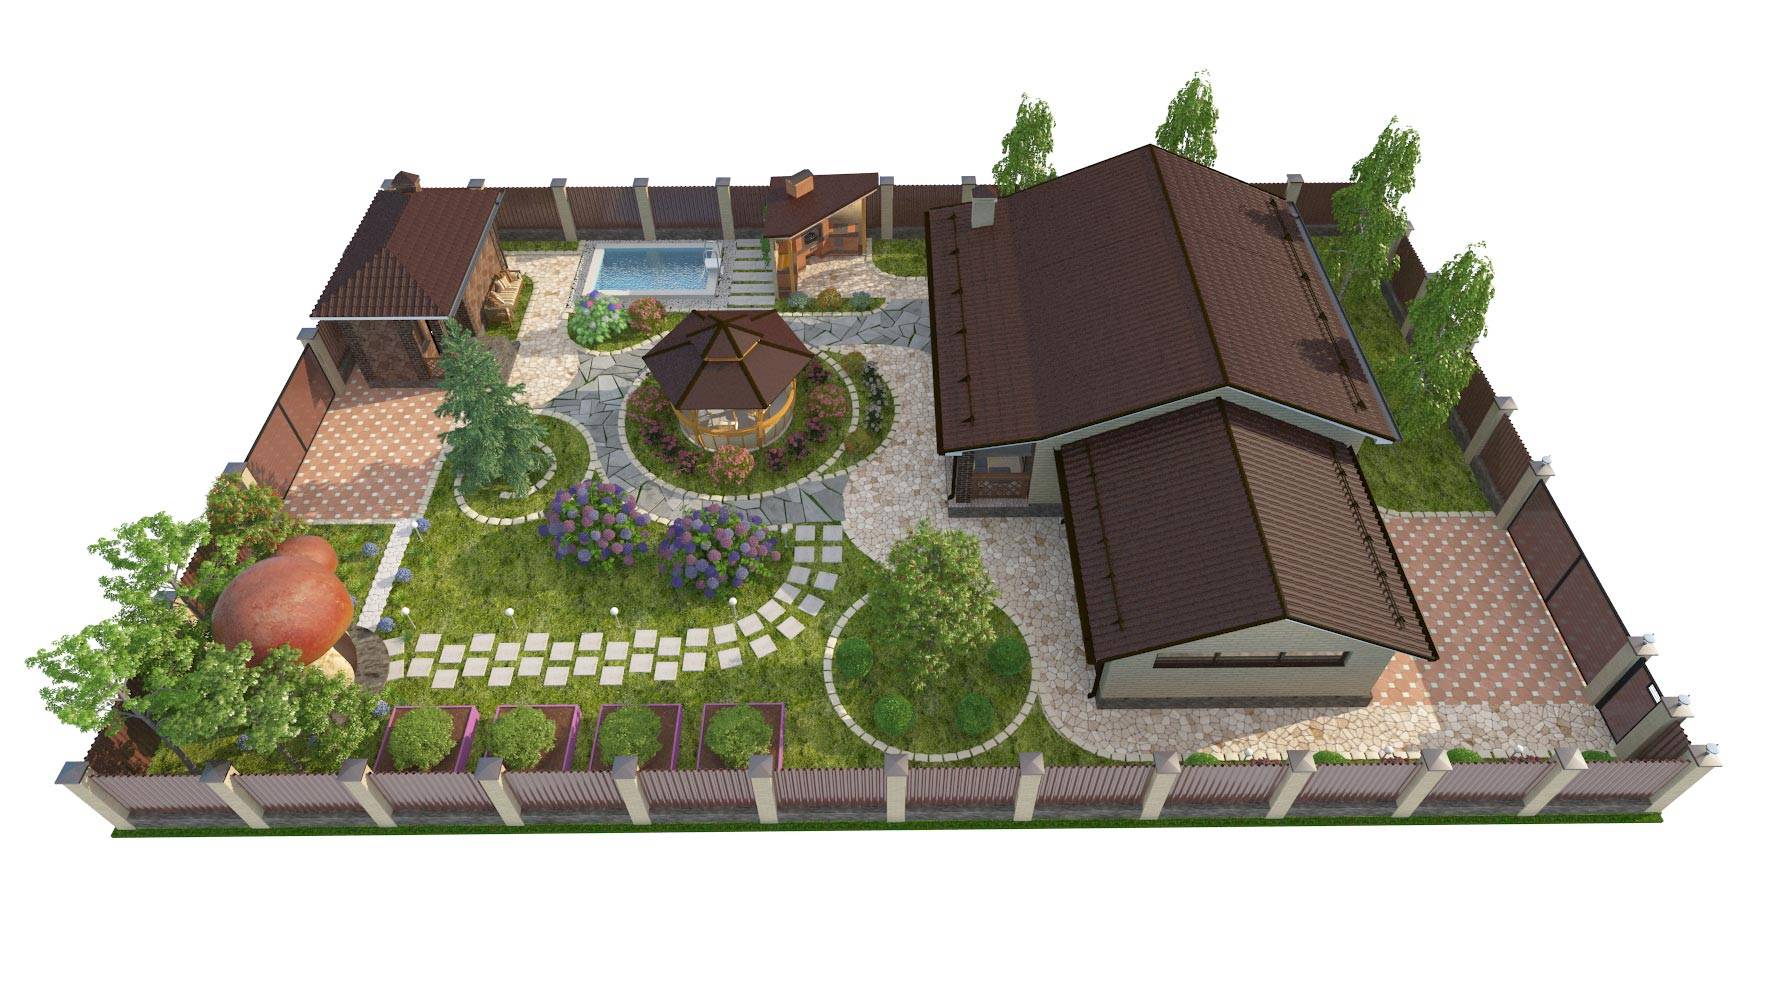 Планировка участка загородного дома 12 соток: схема, варианты ландшафтного дизайна, примеры проектов с домом, баней и гаражом
 - 22 фото